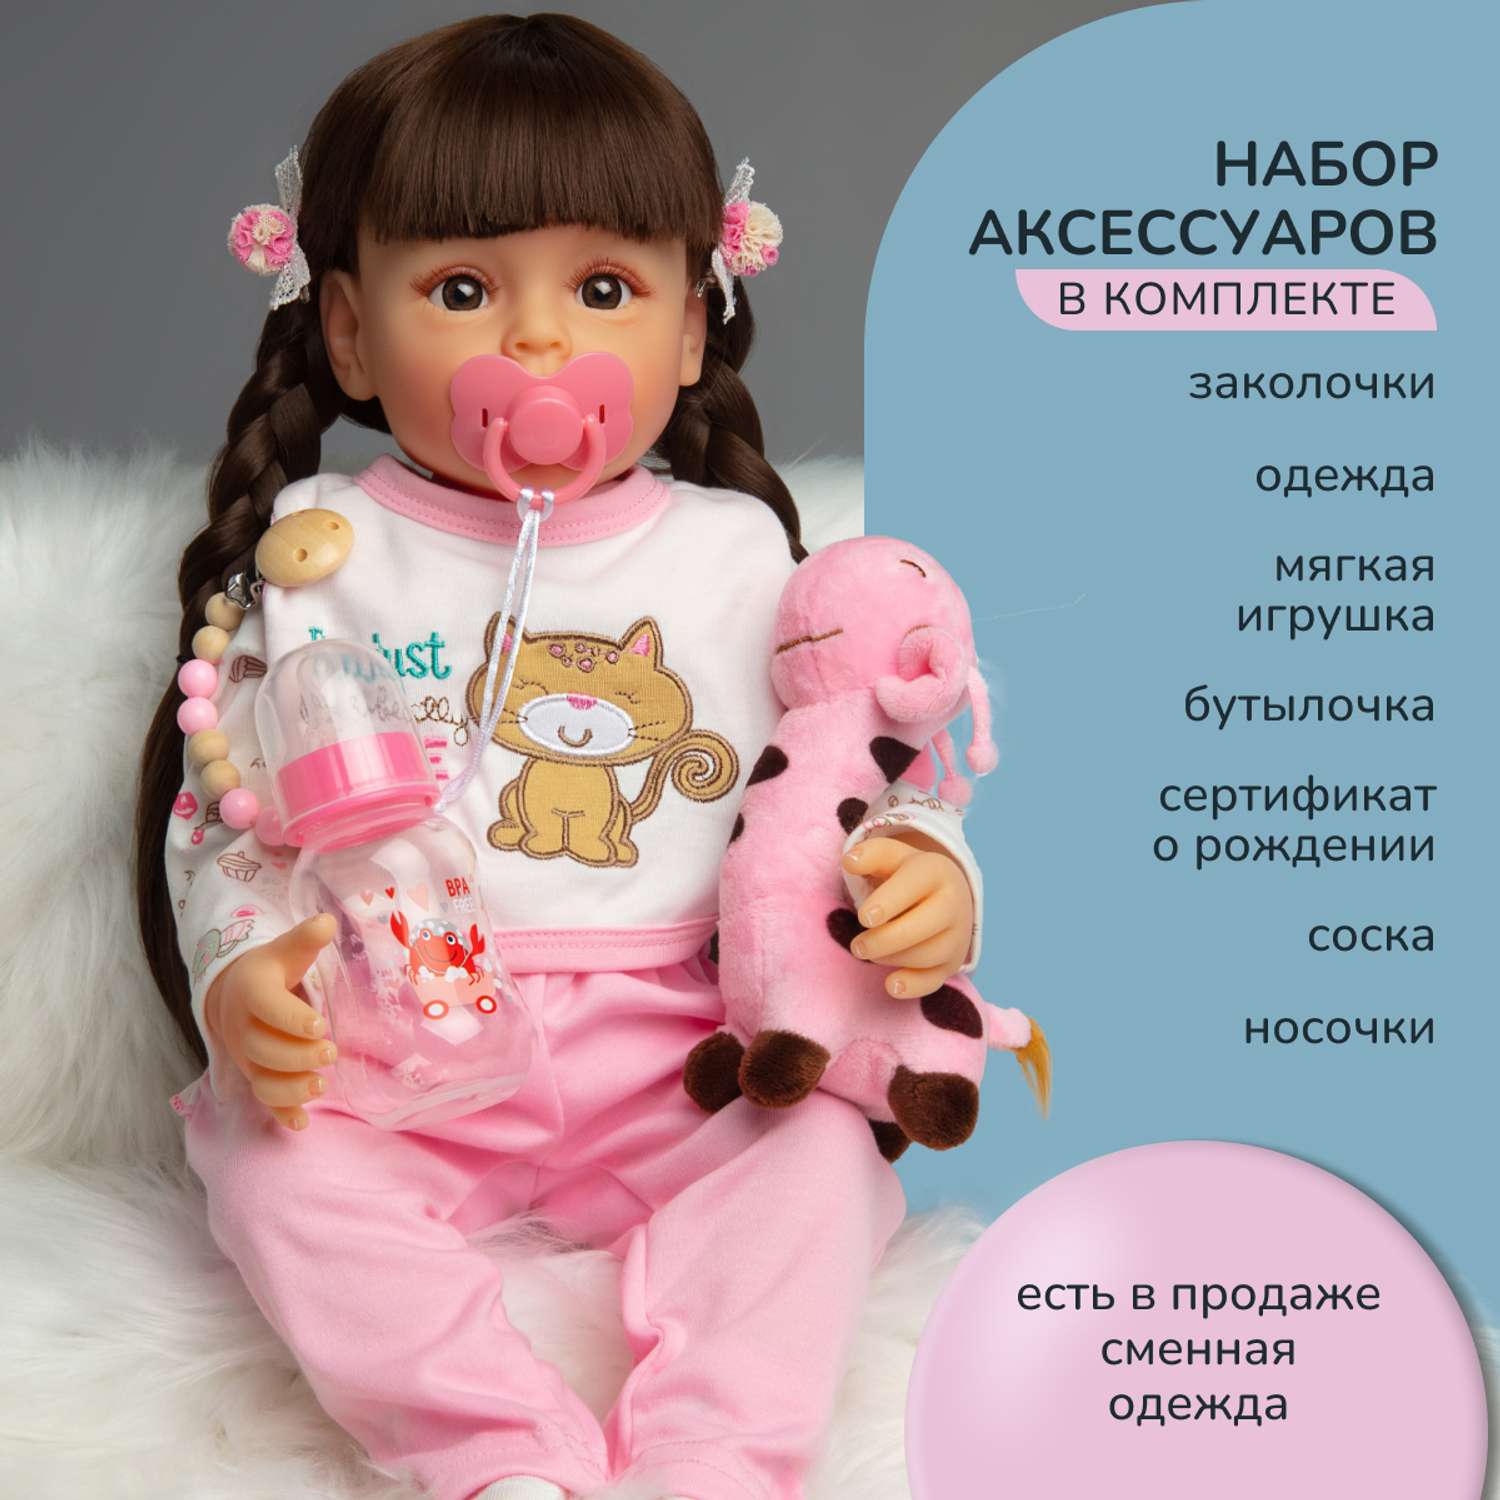 Психологическая роль куклы в развитии ребенка — почему ребенку важно играть в куклы?